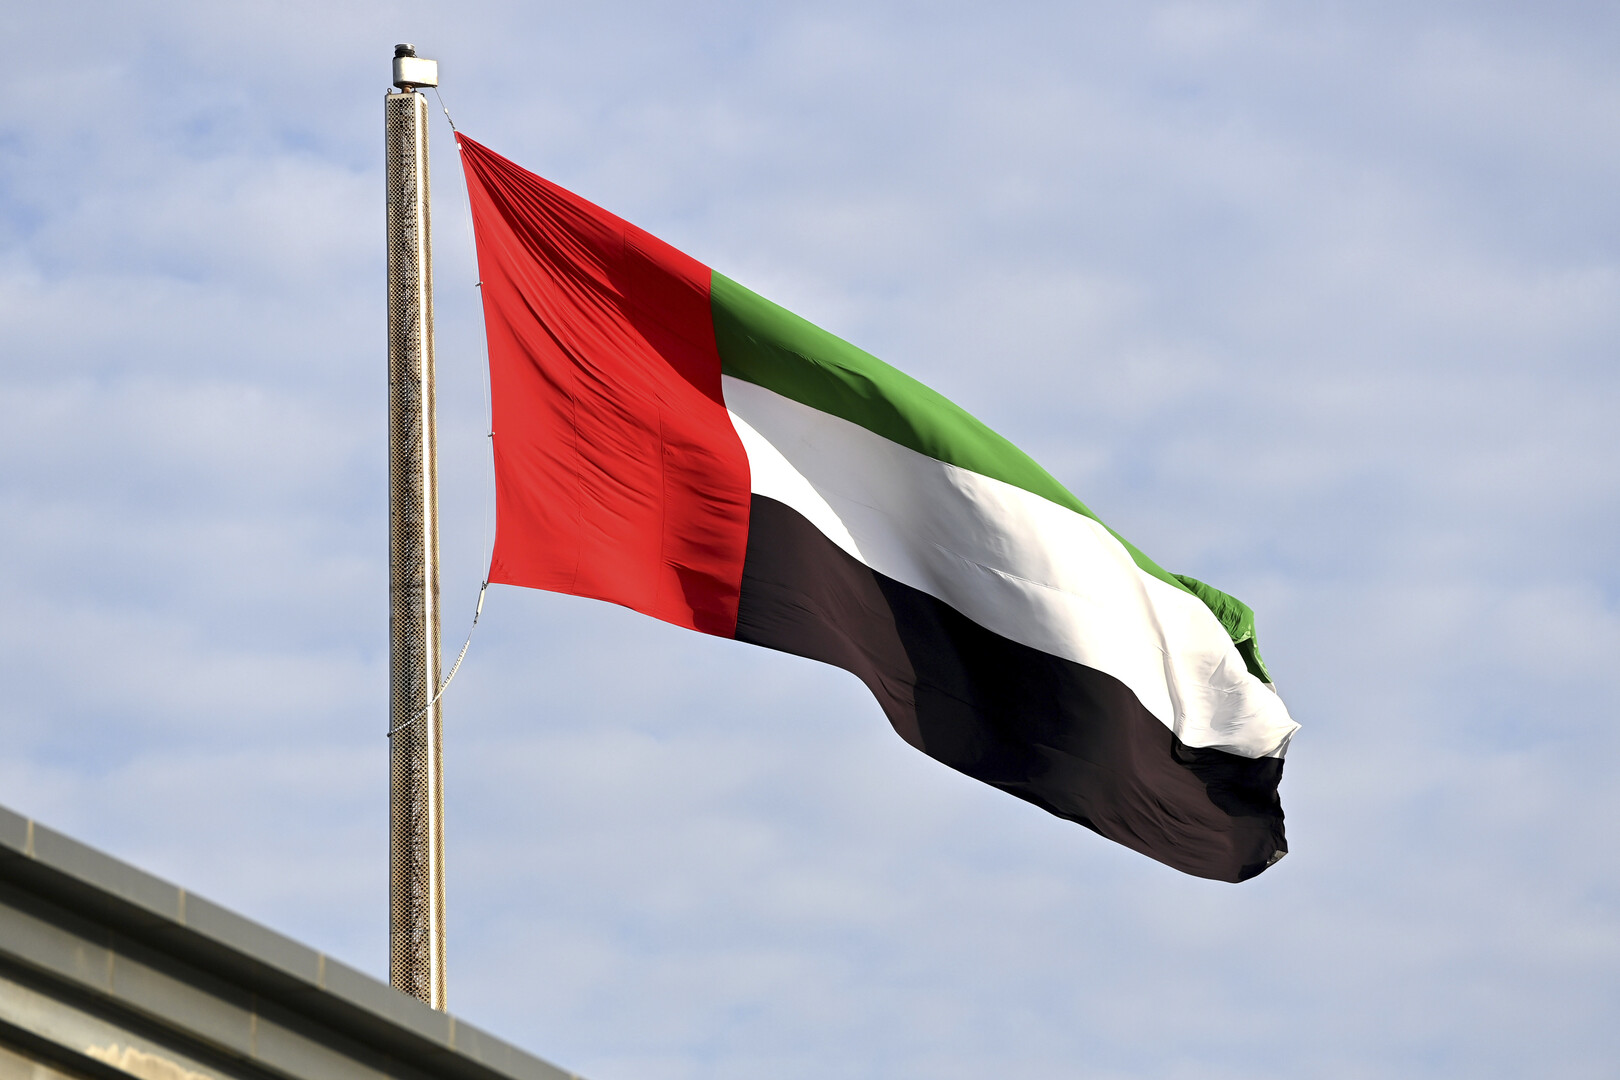 الإمارات تعرب عن قلقها من تداعيات الهجمات على الملاحة بالبحر الأحمر وتدعم الجهود لحل أزمة اليمن